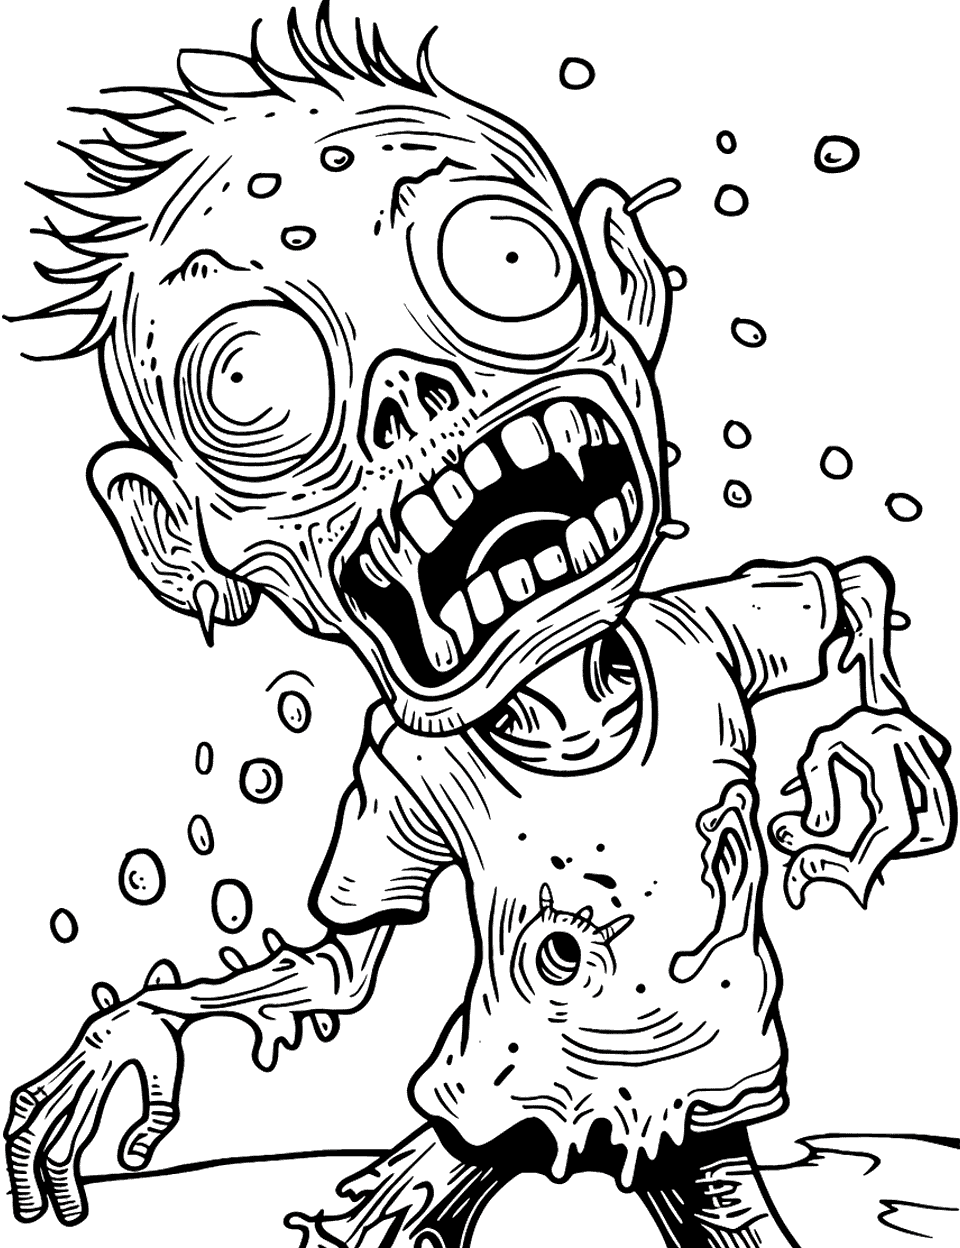 Venomous Zombie Attack Coloring Page - A zombie with venomous traits.